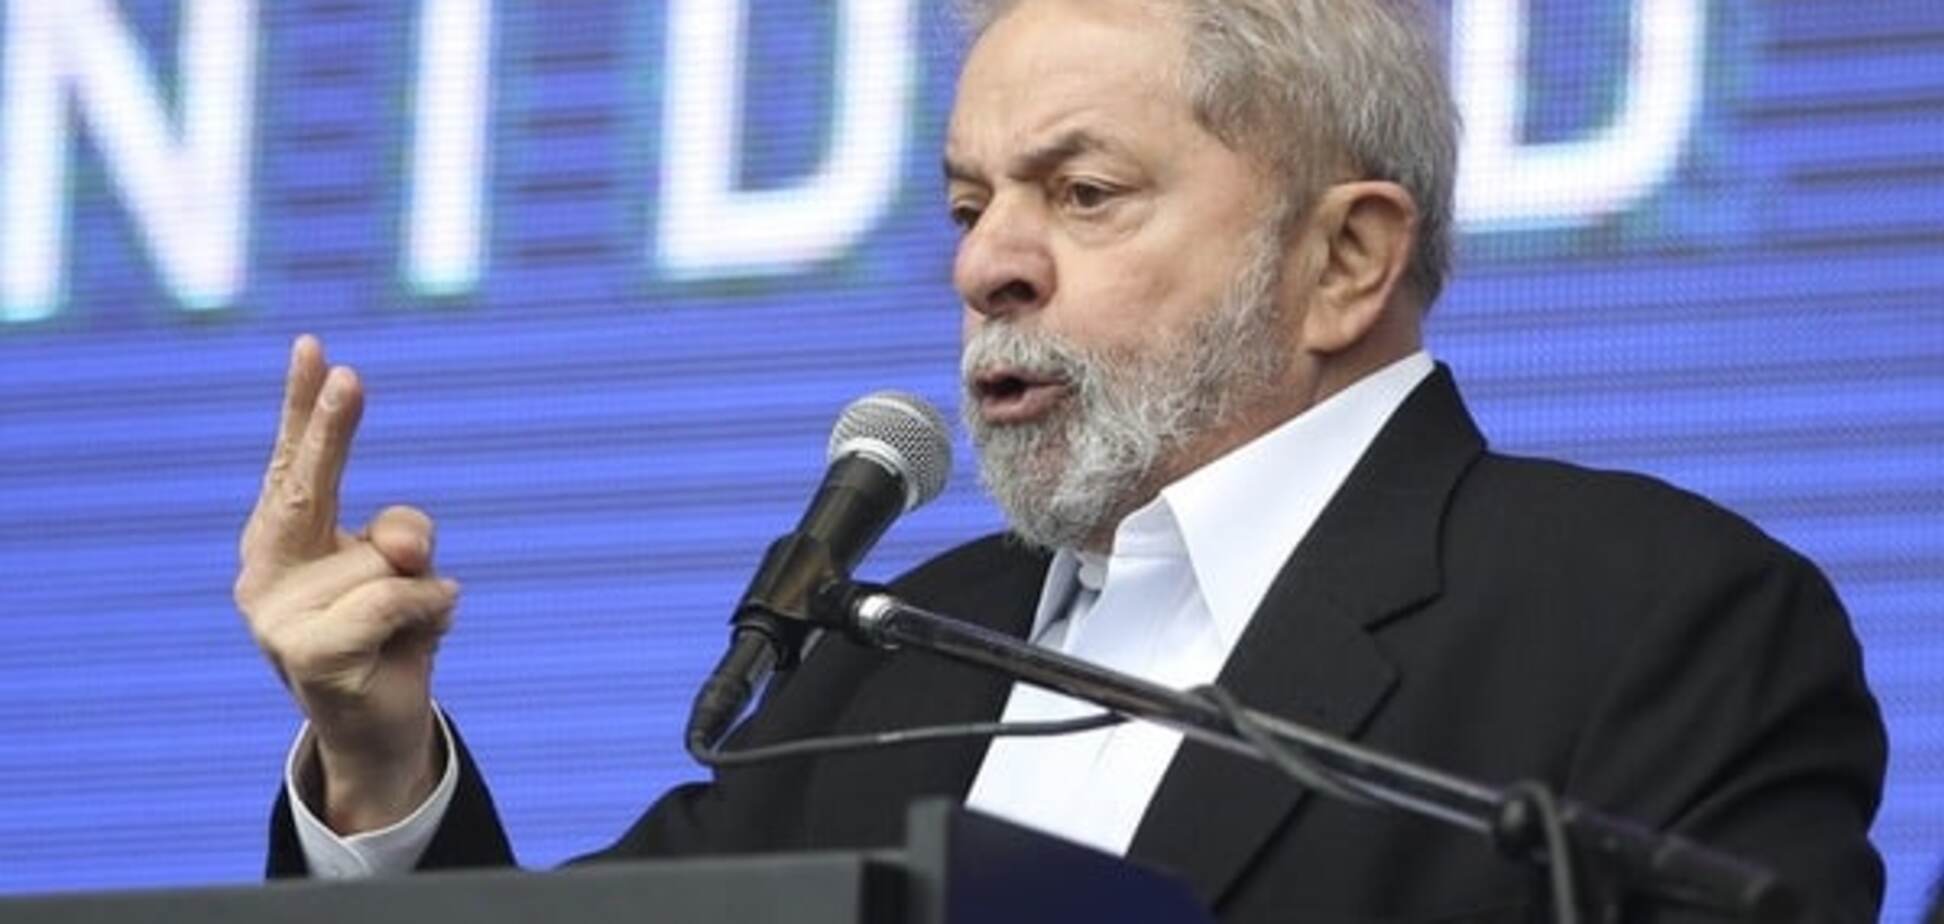 ЗМІ: поліція затримала екс-президента Бразилії